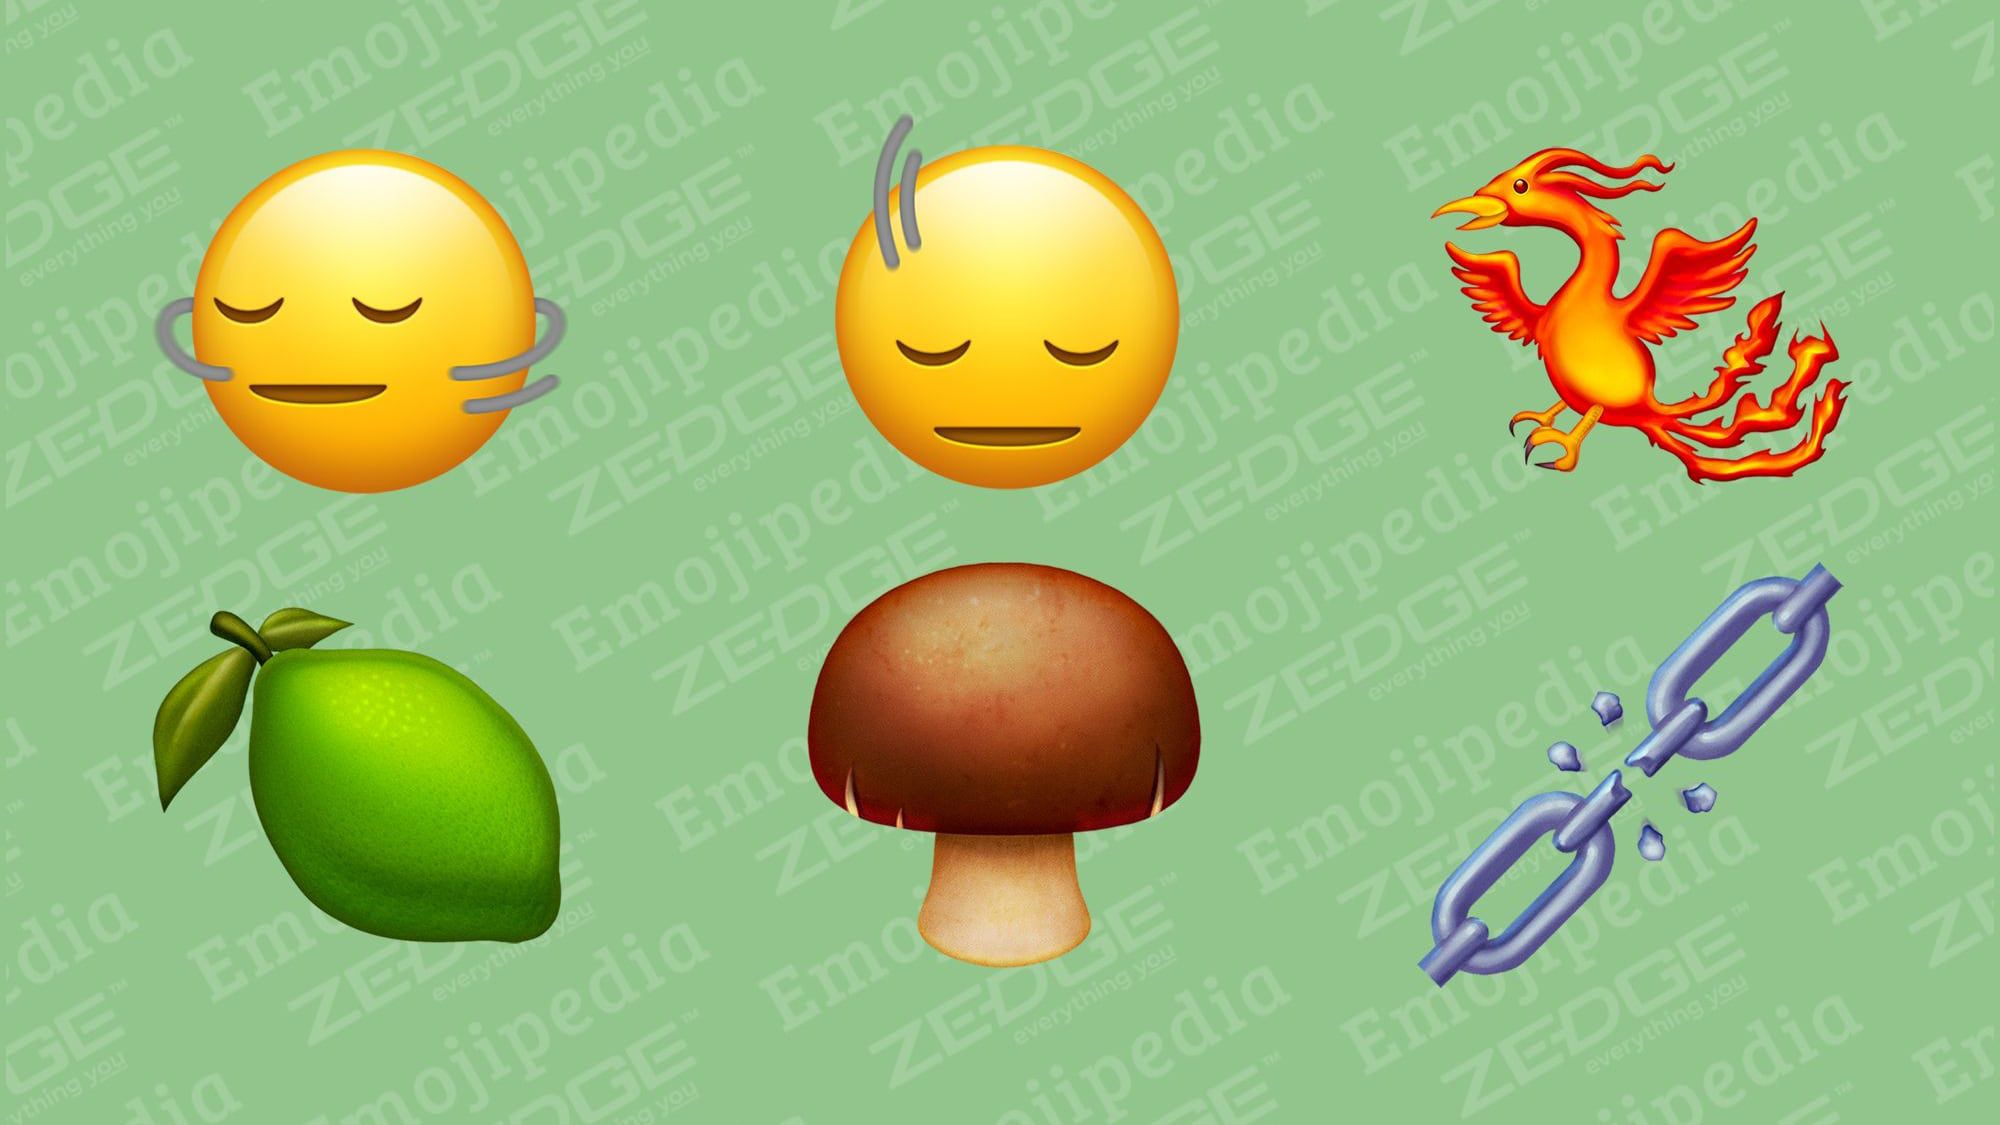 يضيف الإصدار التجريبي من iOS 17.4 رموزًا تعبيرية جديدة: Shaking Head وLime وPhoenix وBrown Mushroom والمزيد